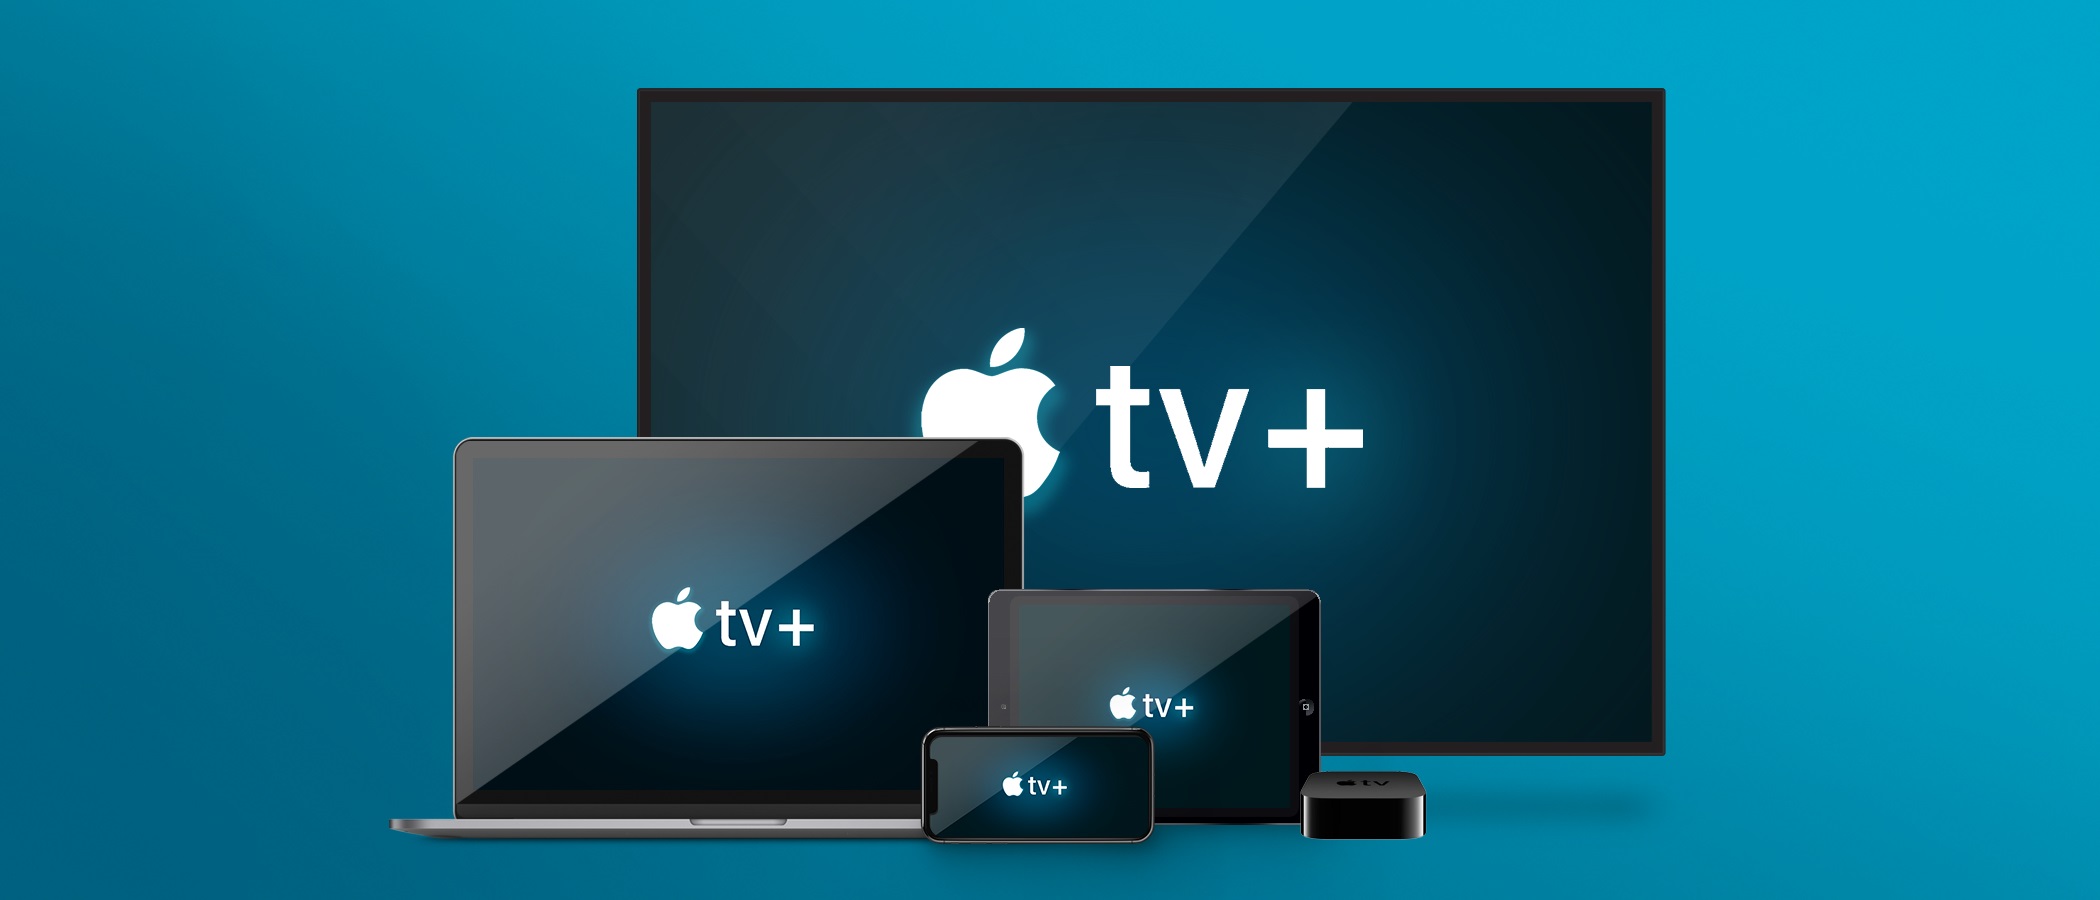 Η Apple παρατείνει τη δωρεάν δοκιμαστική περίοδο του Apple TV+ μέχρι τον Ιούλιο